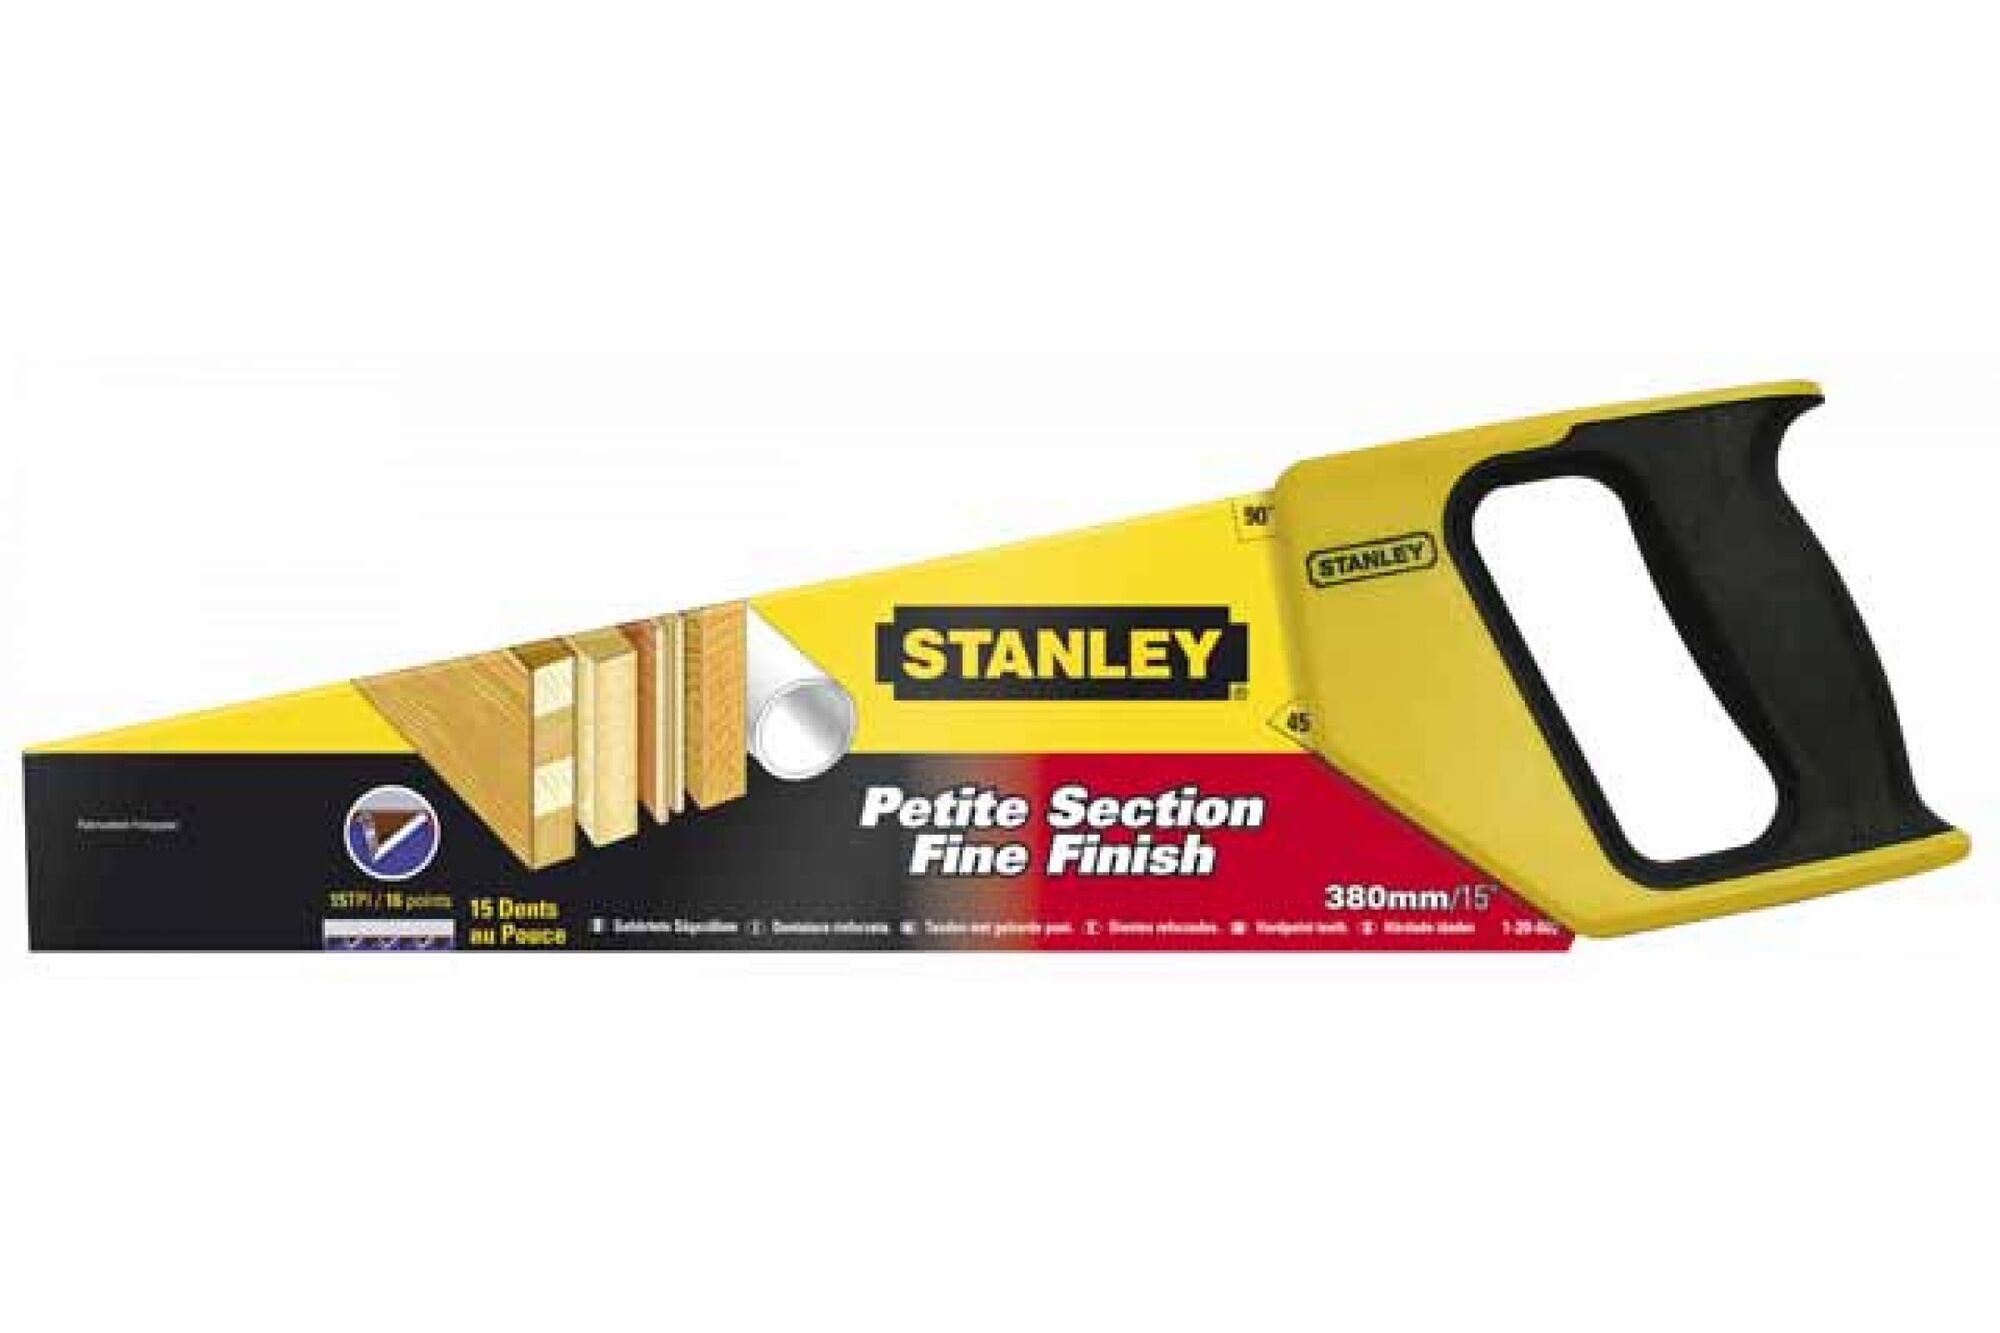 Универсальная ножовка Stanley 1-20-002